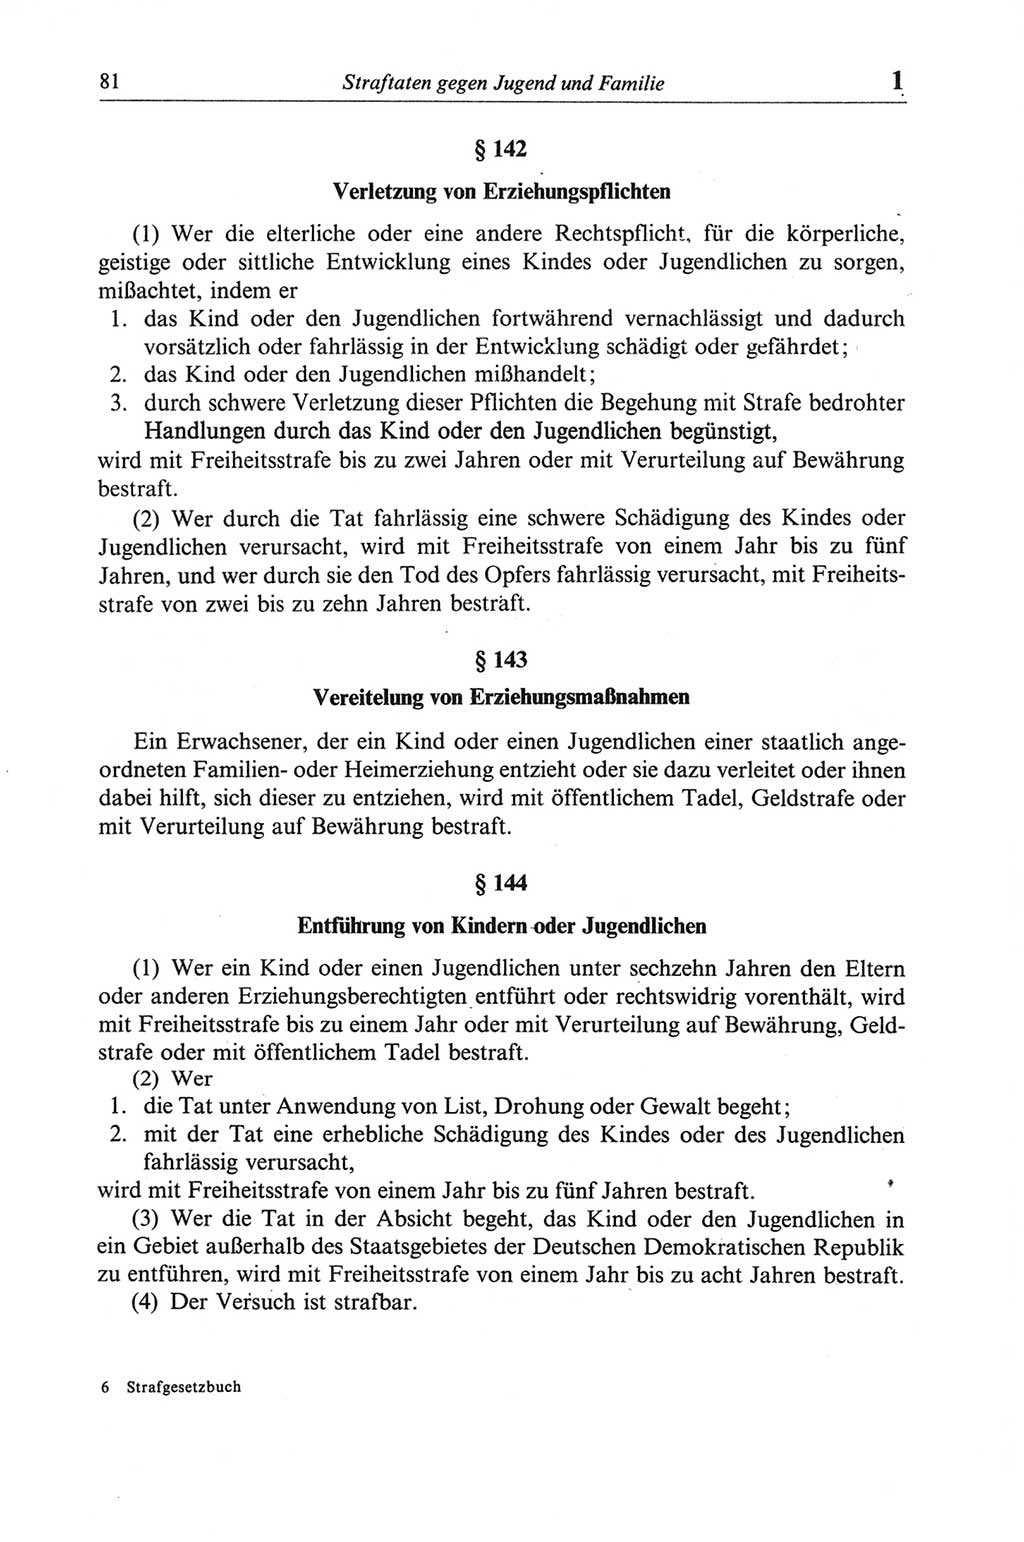 Strafgesetzbuch (StGB) der Deutschen Demokratischen Republik (DDR) und angrenzende Gesetze und Bestimmungen 1968, Seite 81 (StGB Ges. Best. DDR 1968, S. 81)